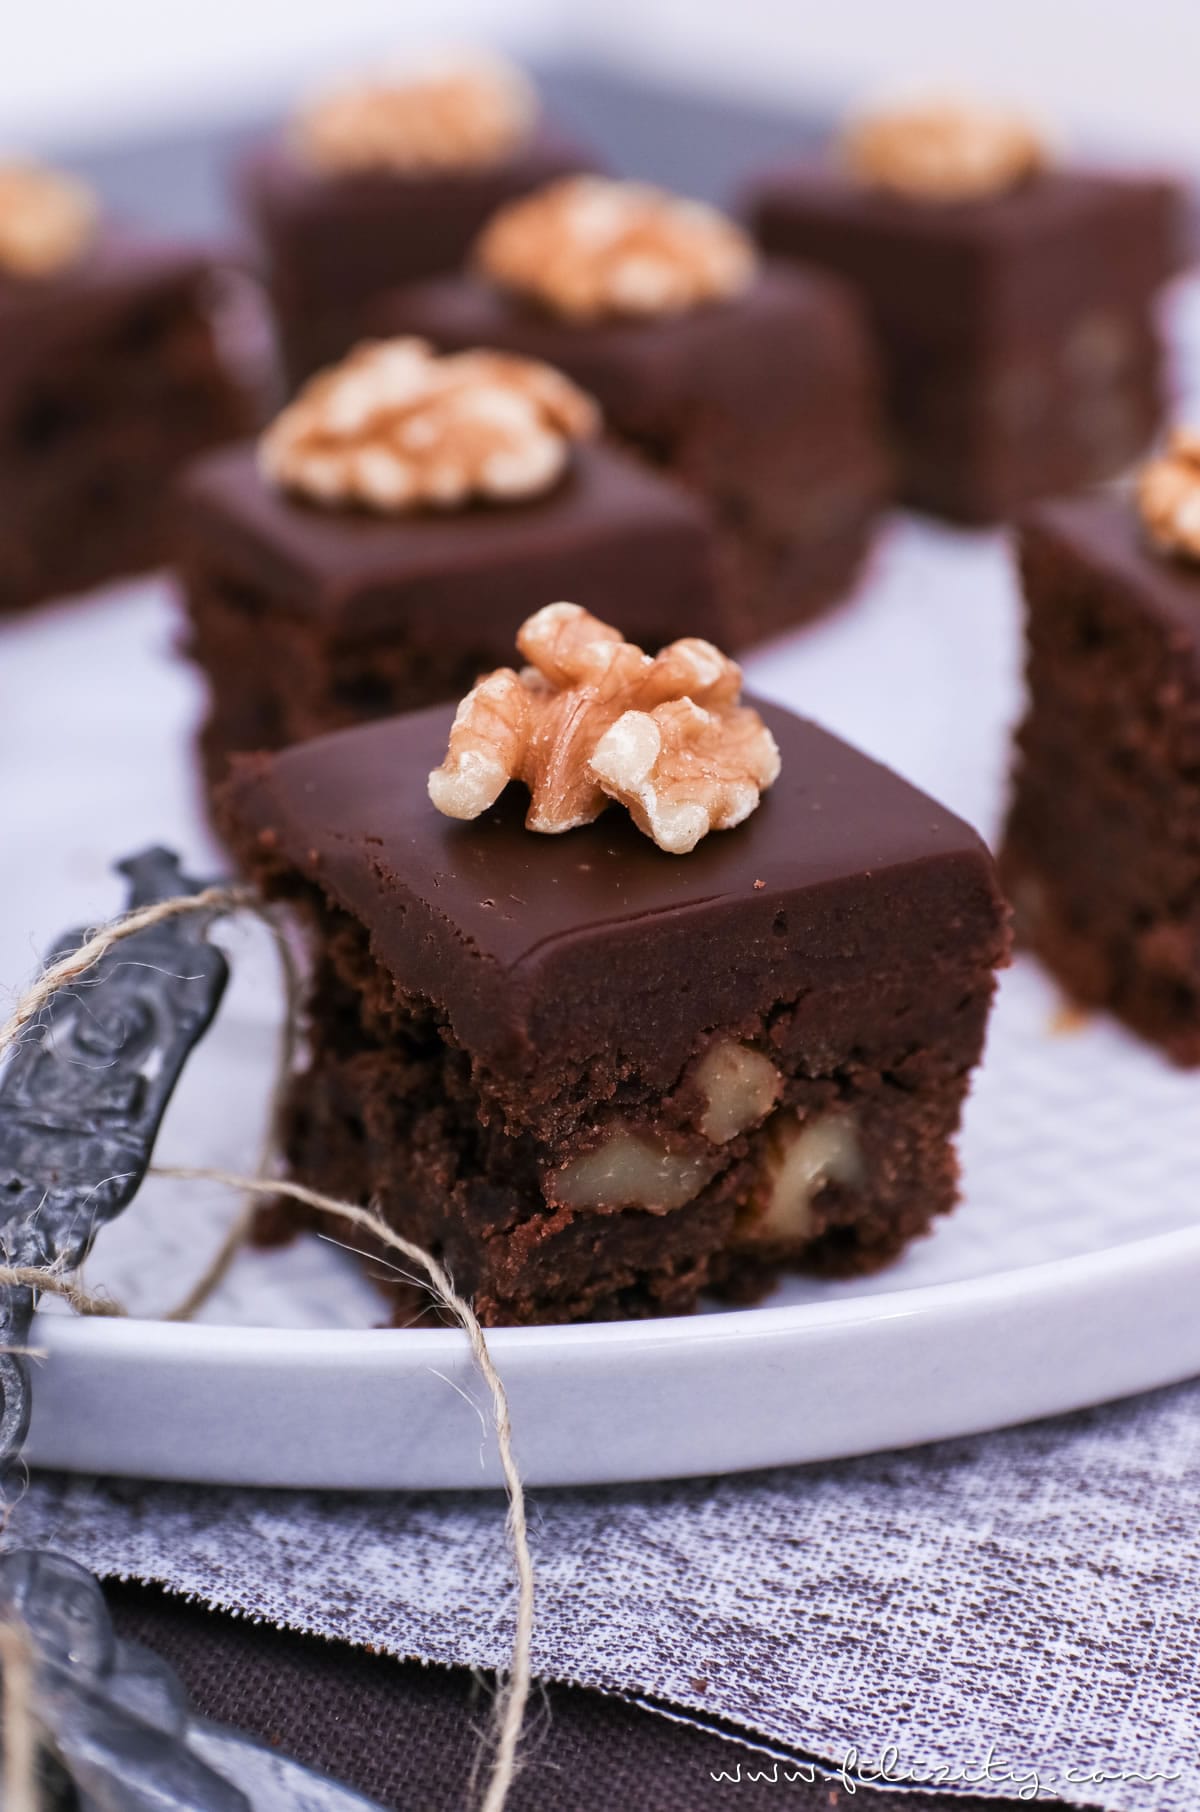 Brownies Rezept: Death by Chocolate! Die wohl schokoladigsten Brownies der Welt | Filizity.com | Food-Blog aus dem Rheinland #deathbychocolate #schokolade #kuchen #brownies